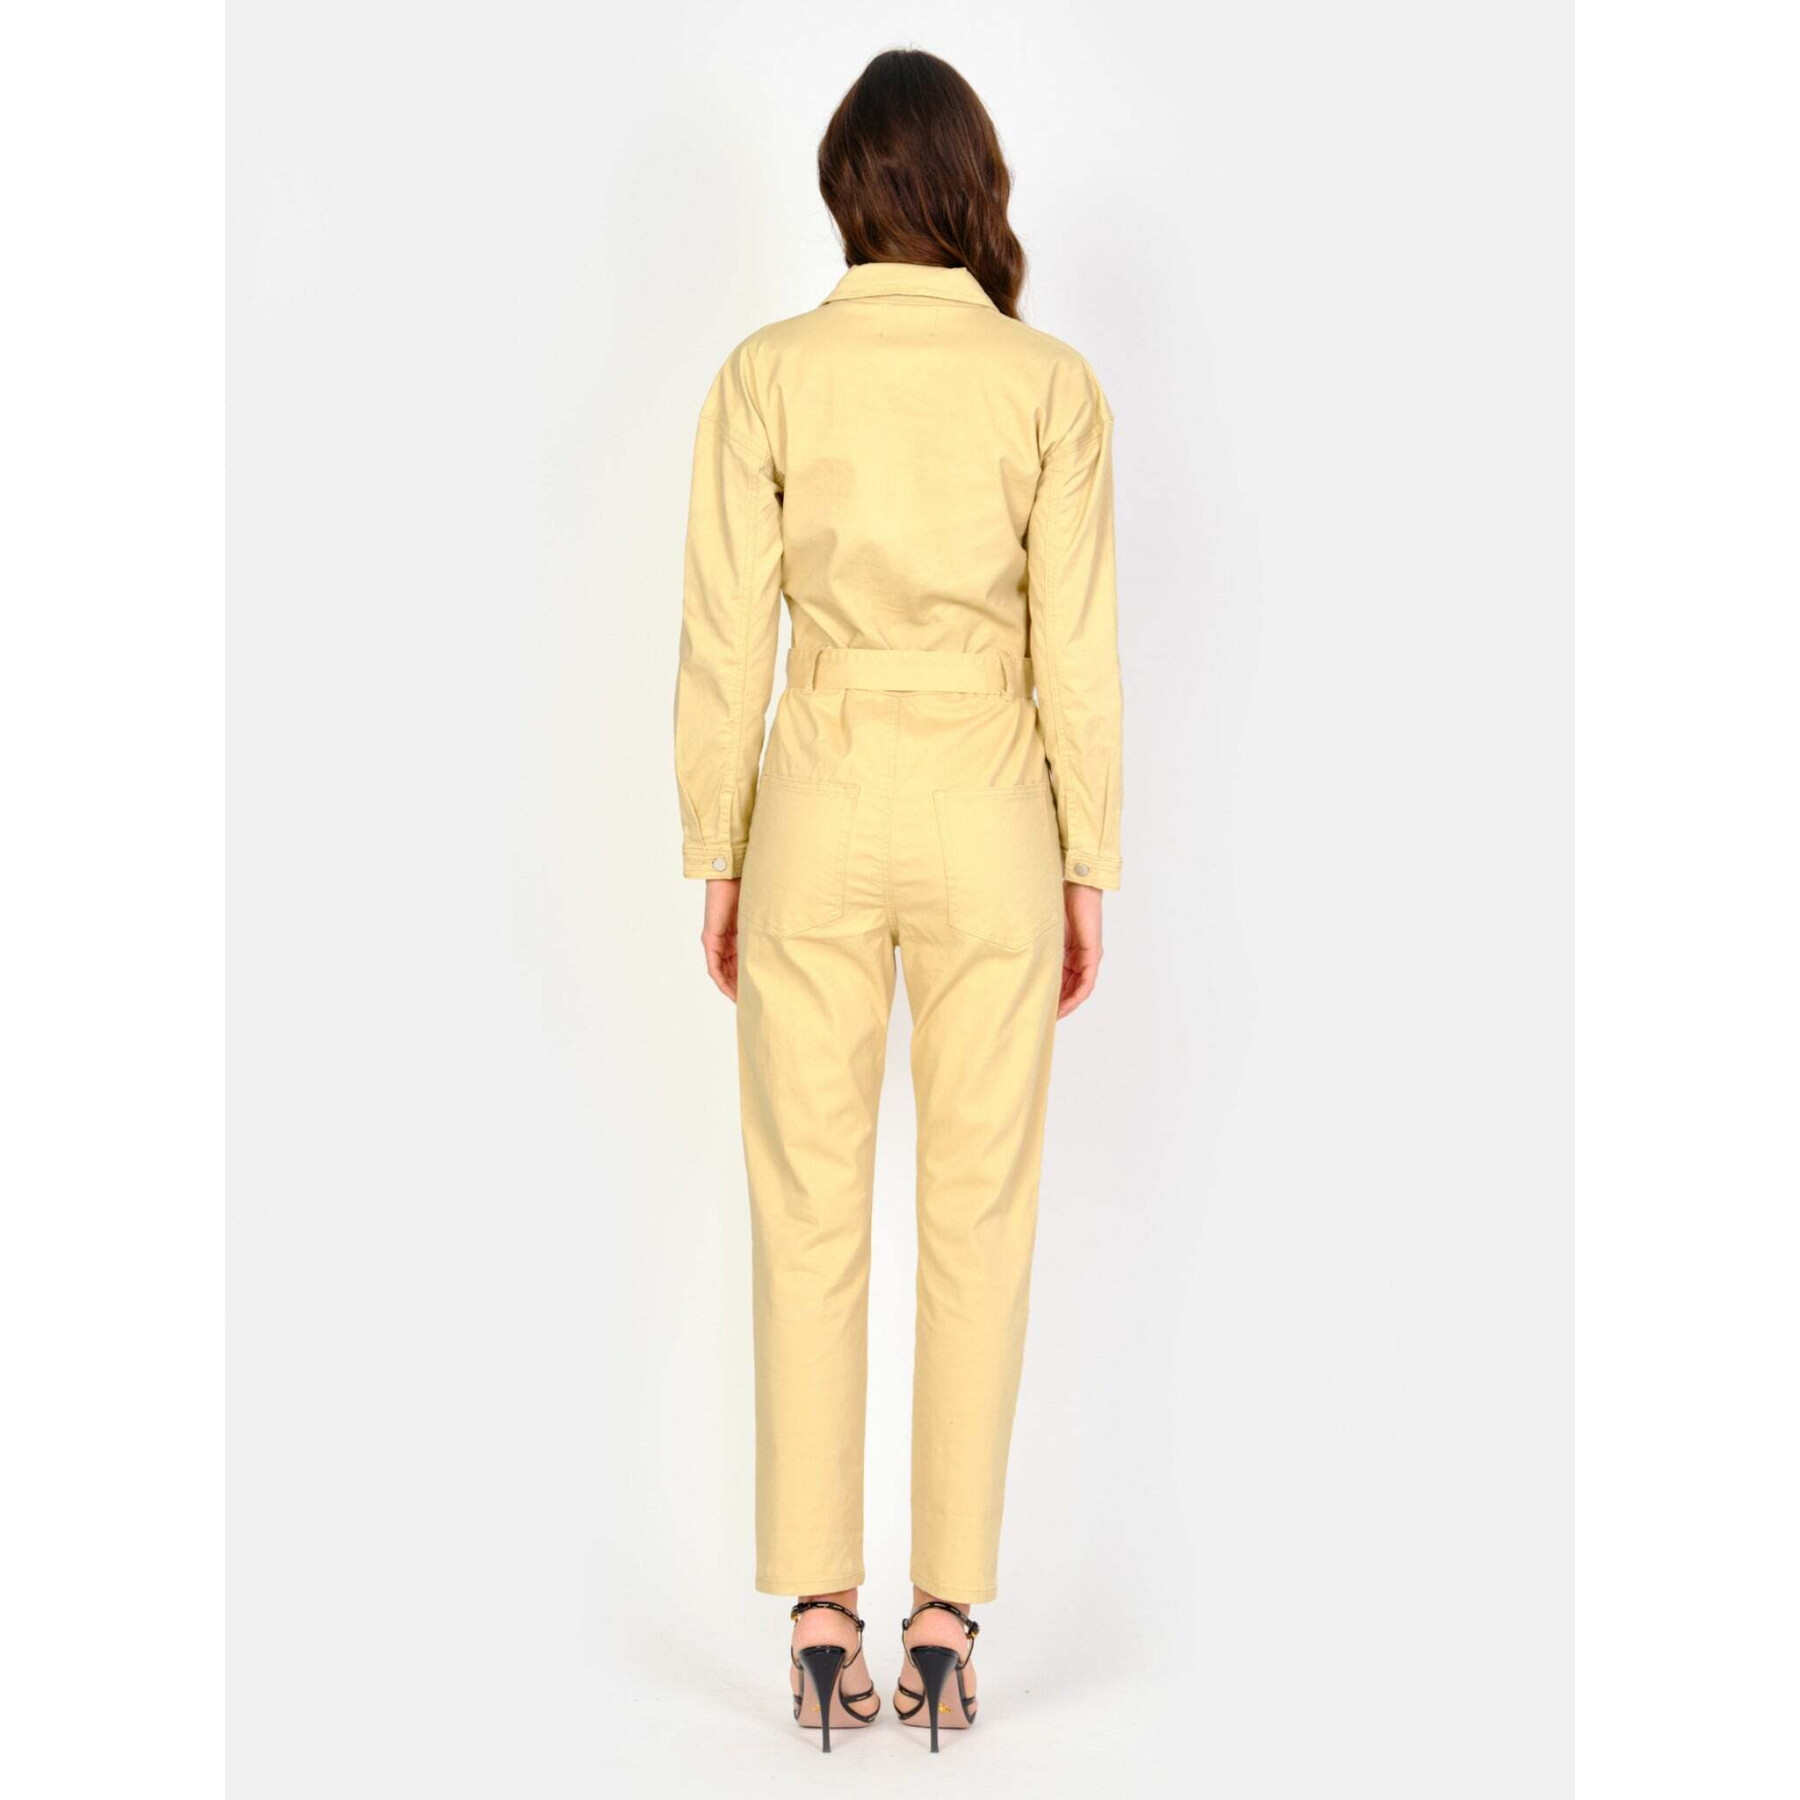 Tuta donna in cotone elasticizzato giallo a maniche lunghe F.A.M. Paris Doria